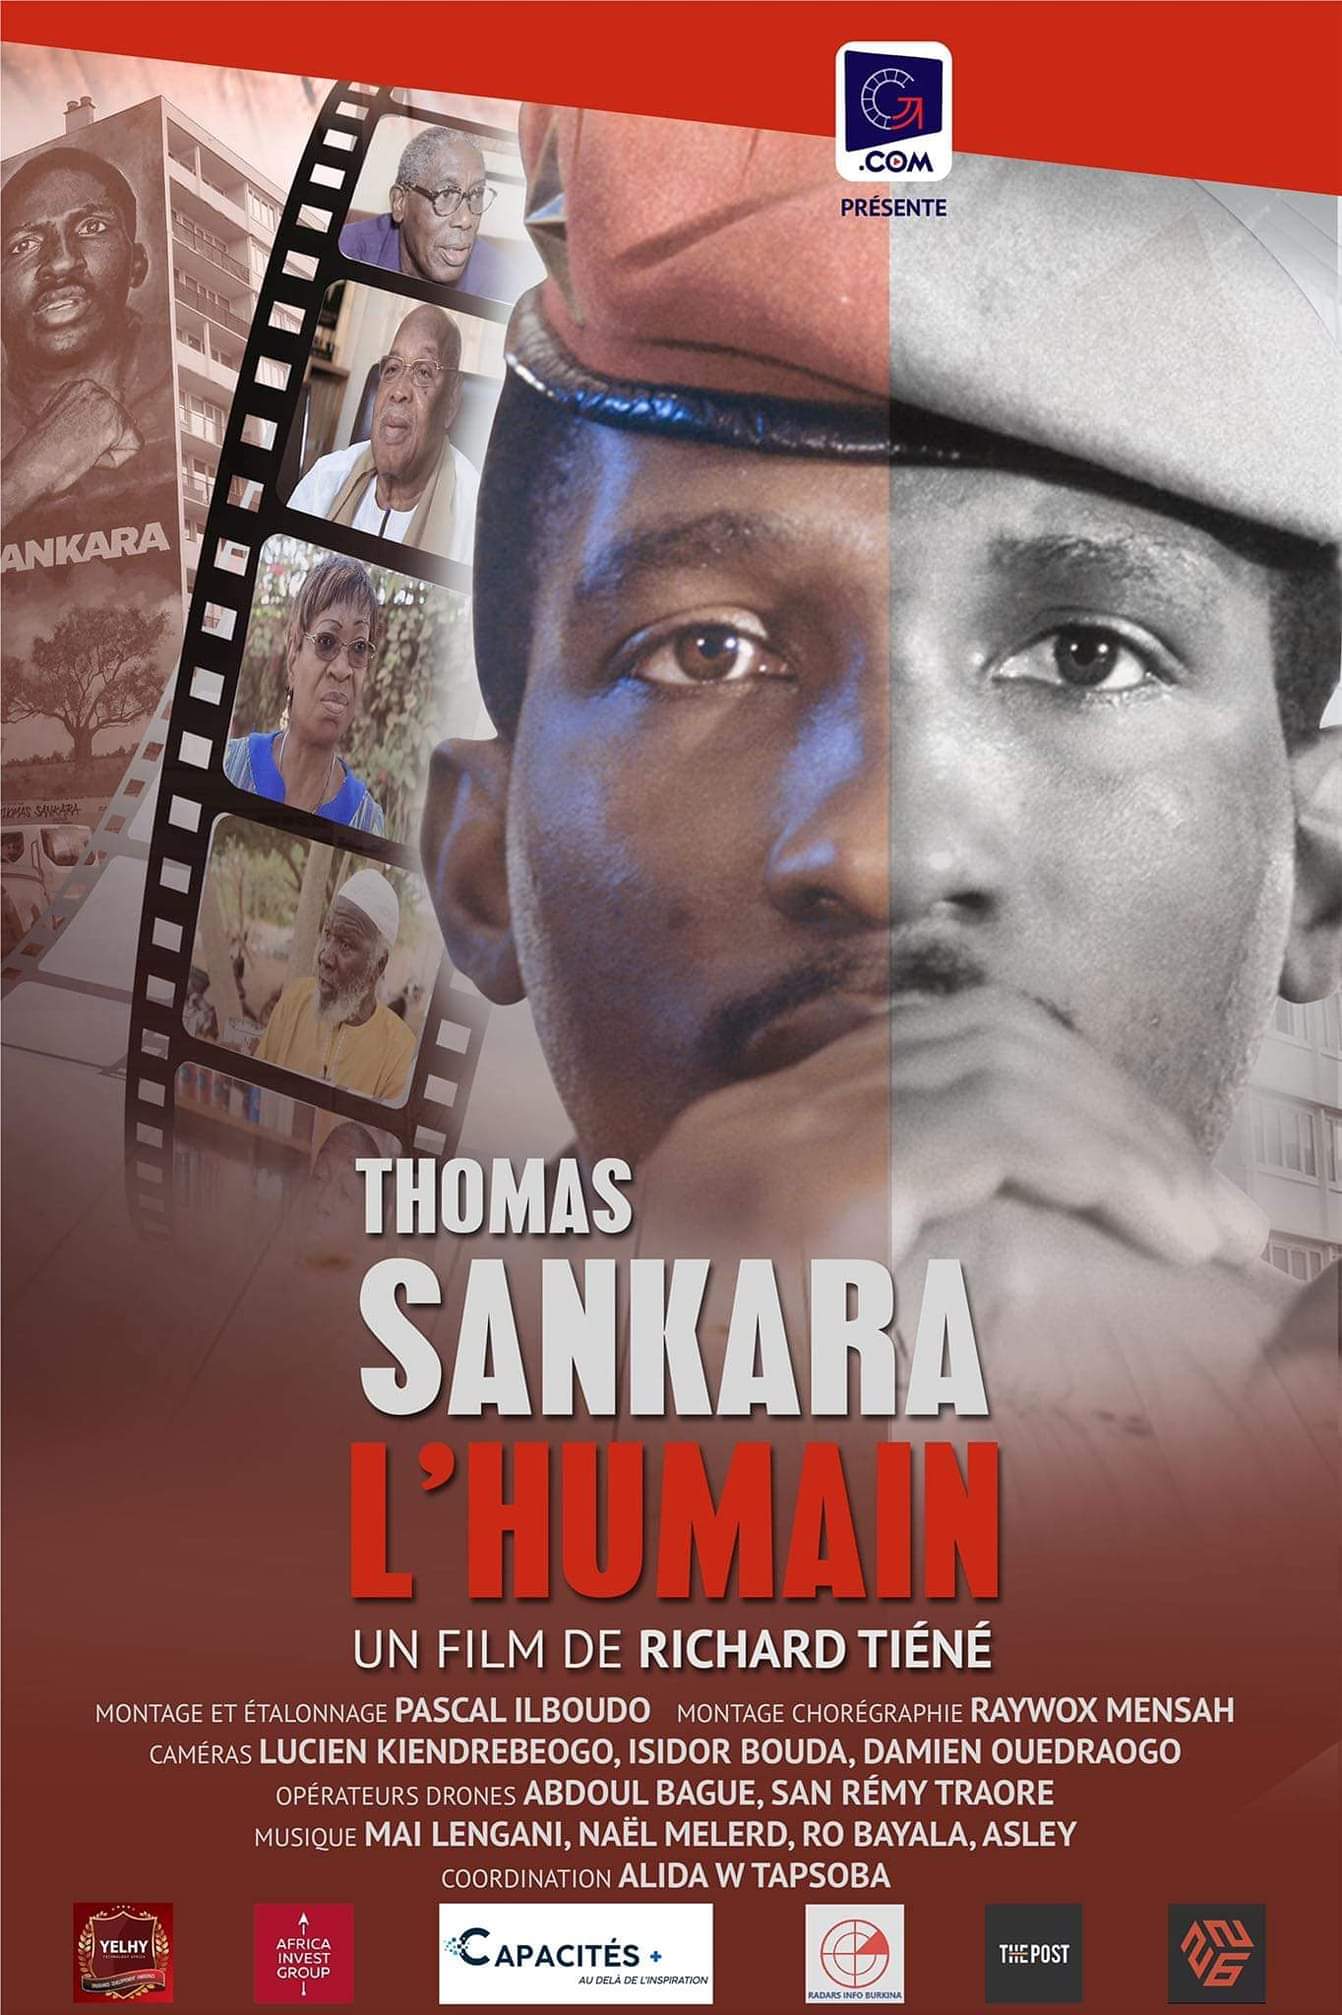  CINÉMA: “Thomas SANKARA, l’humain”, une réalisation de Richard TIÉNÉ